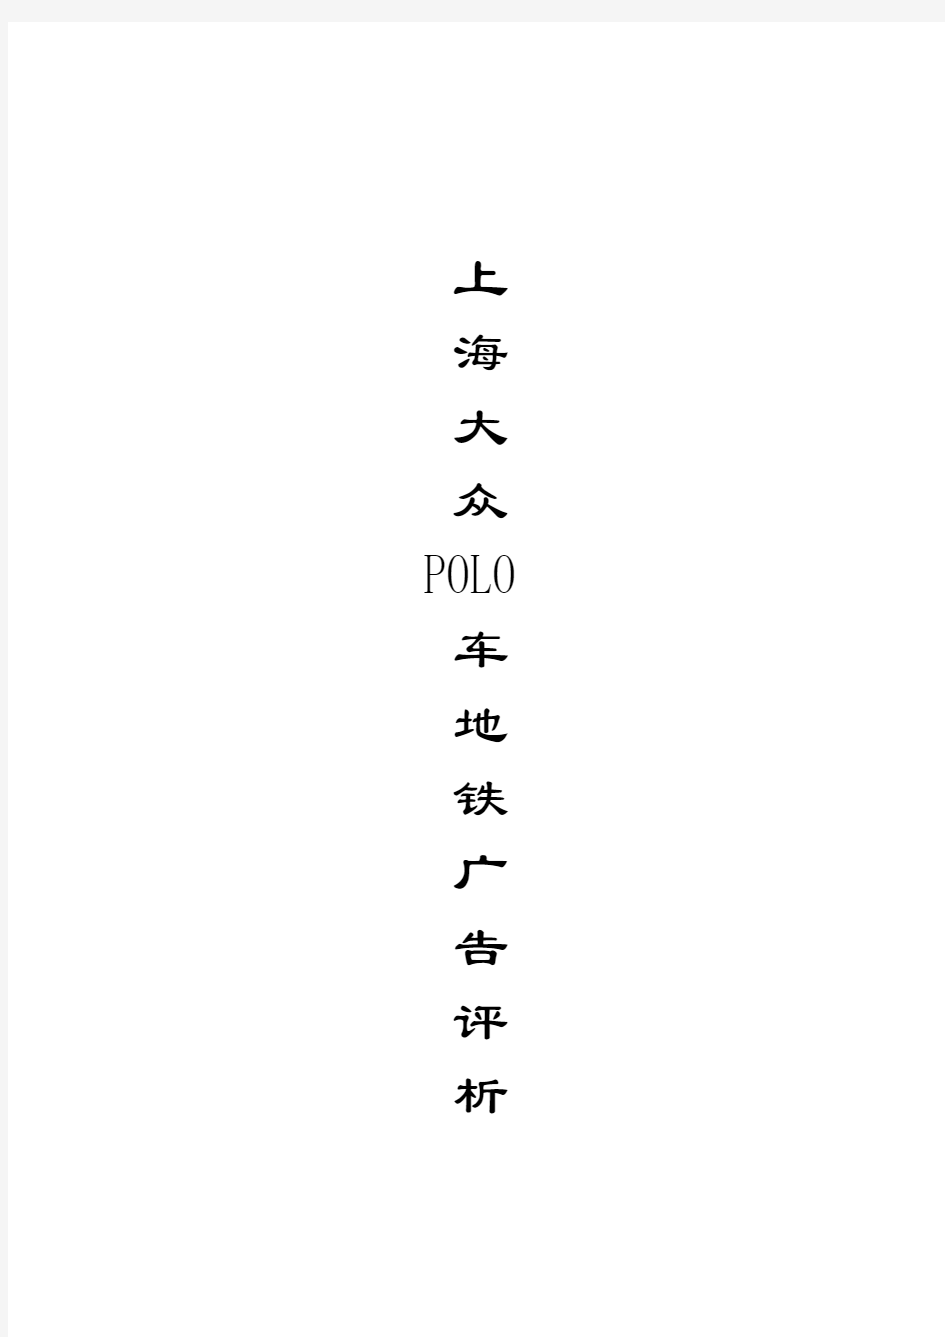 上海大众POLO车地铁广告评析